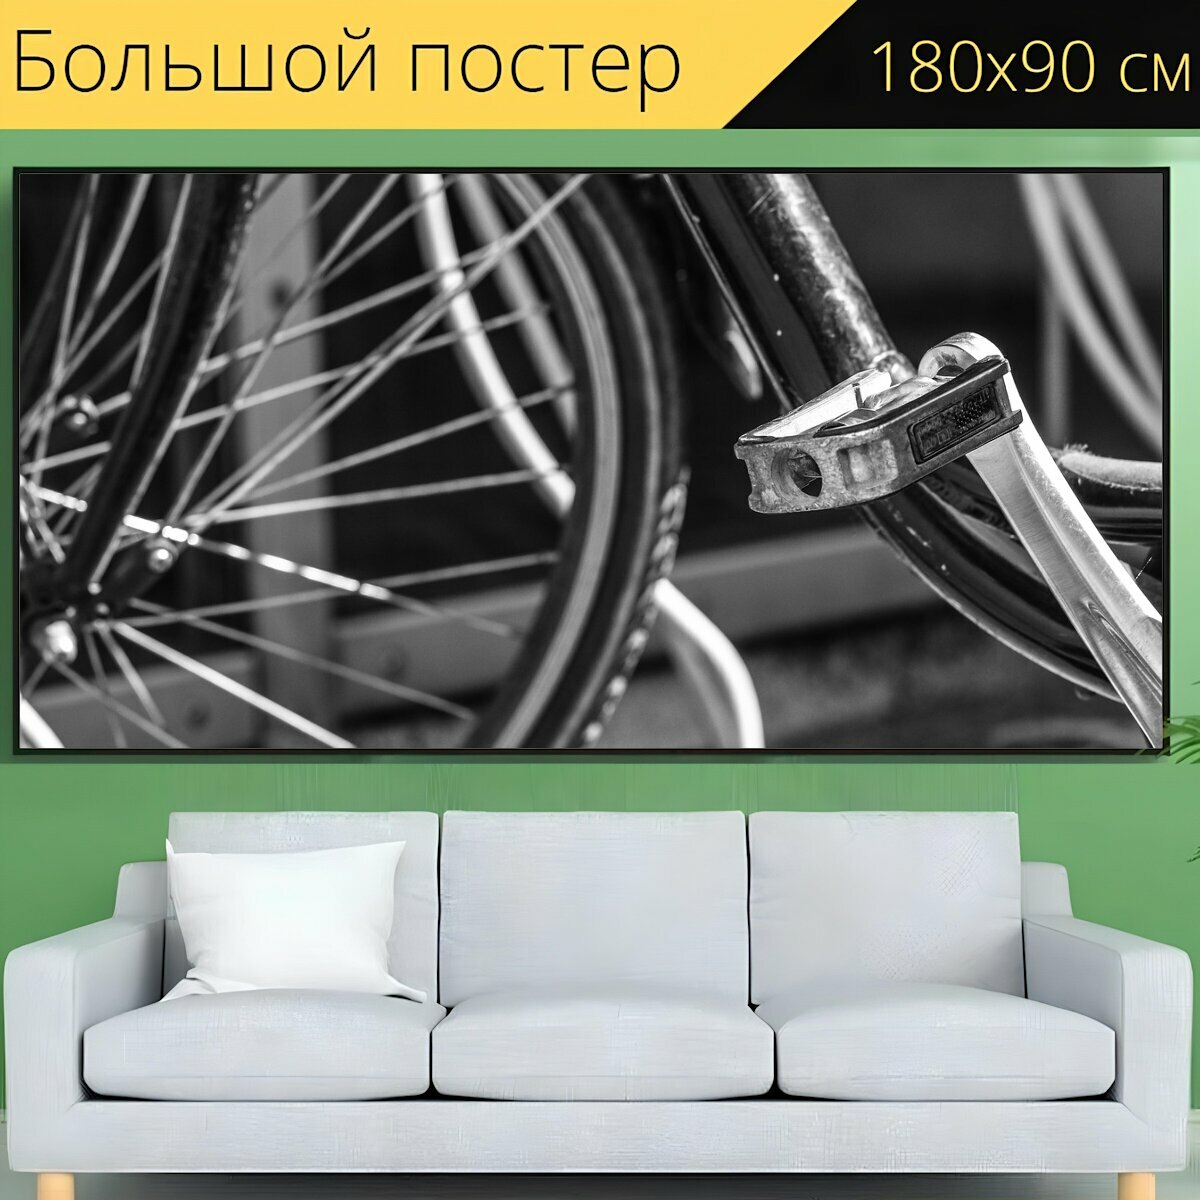 Большой постер "Велосипед, колесо, цикл" 180 x 90 см. для интерьера